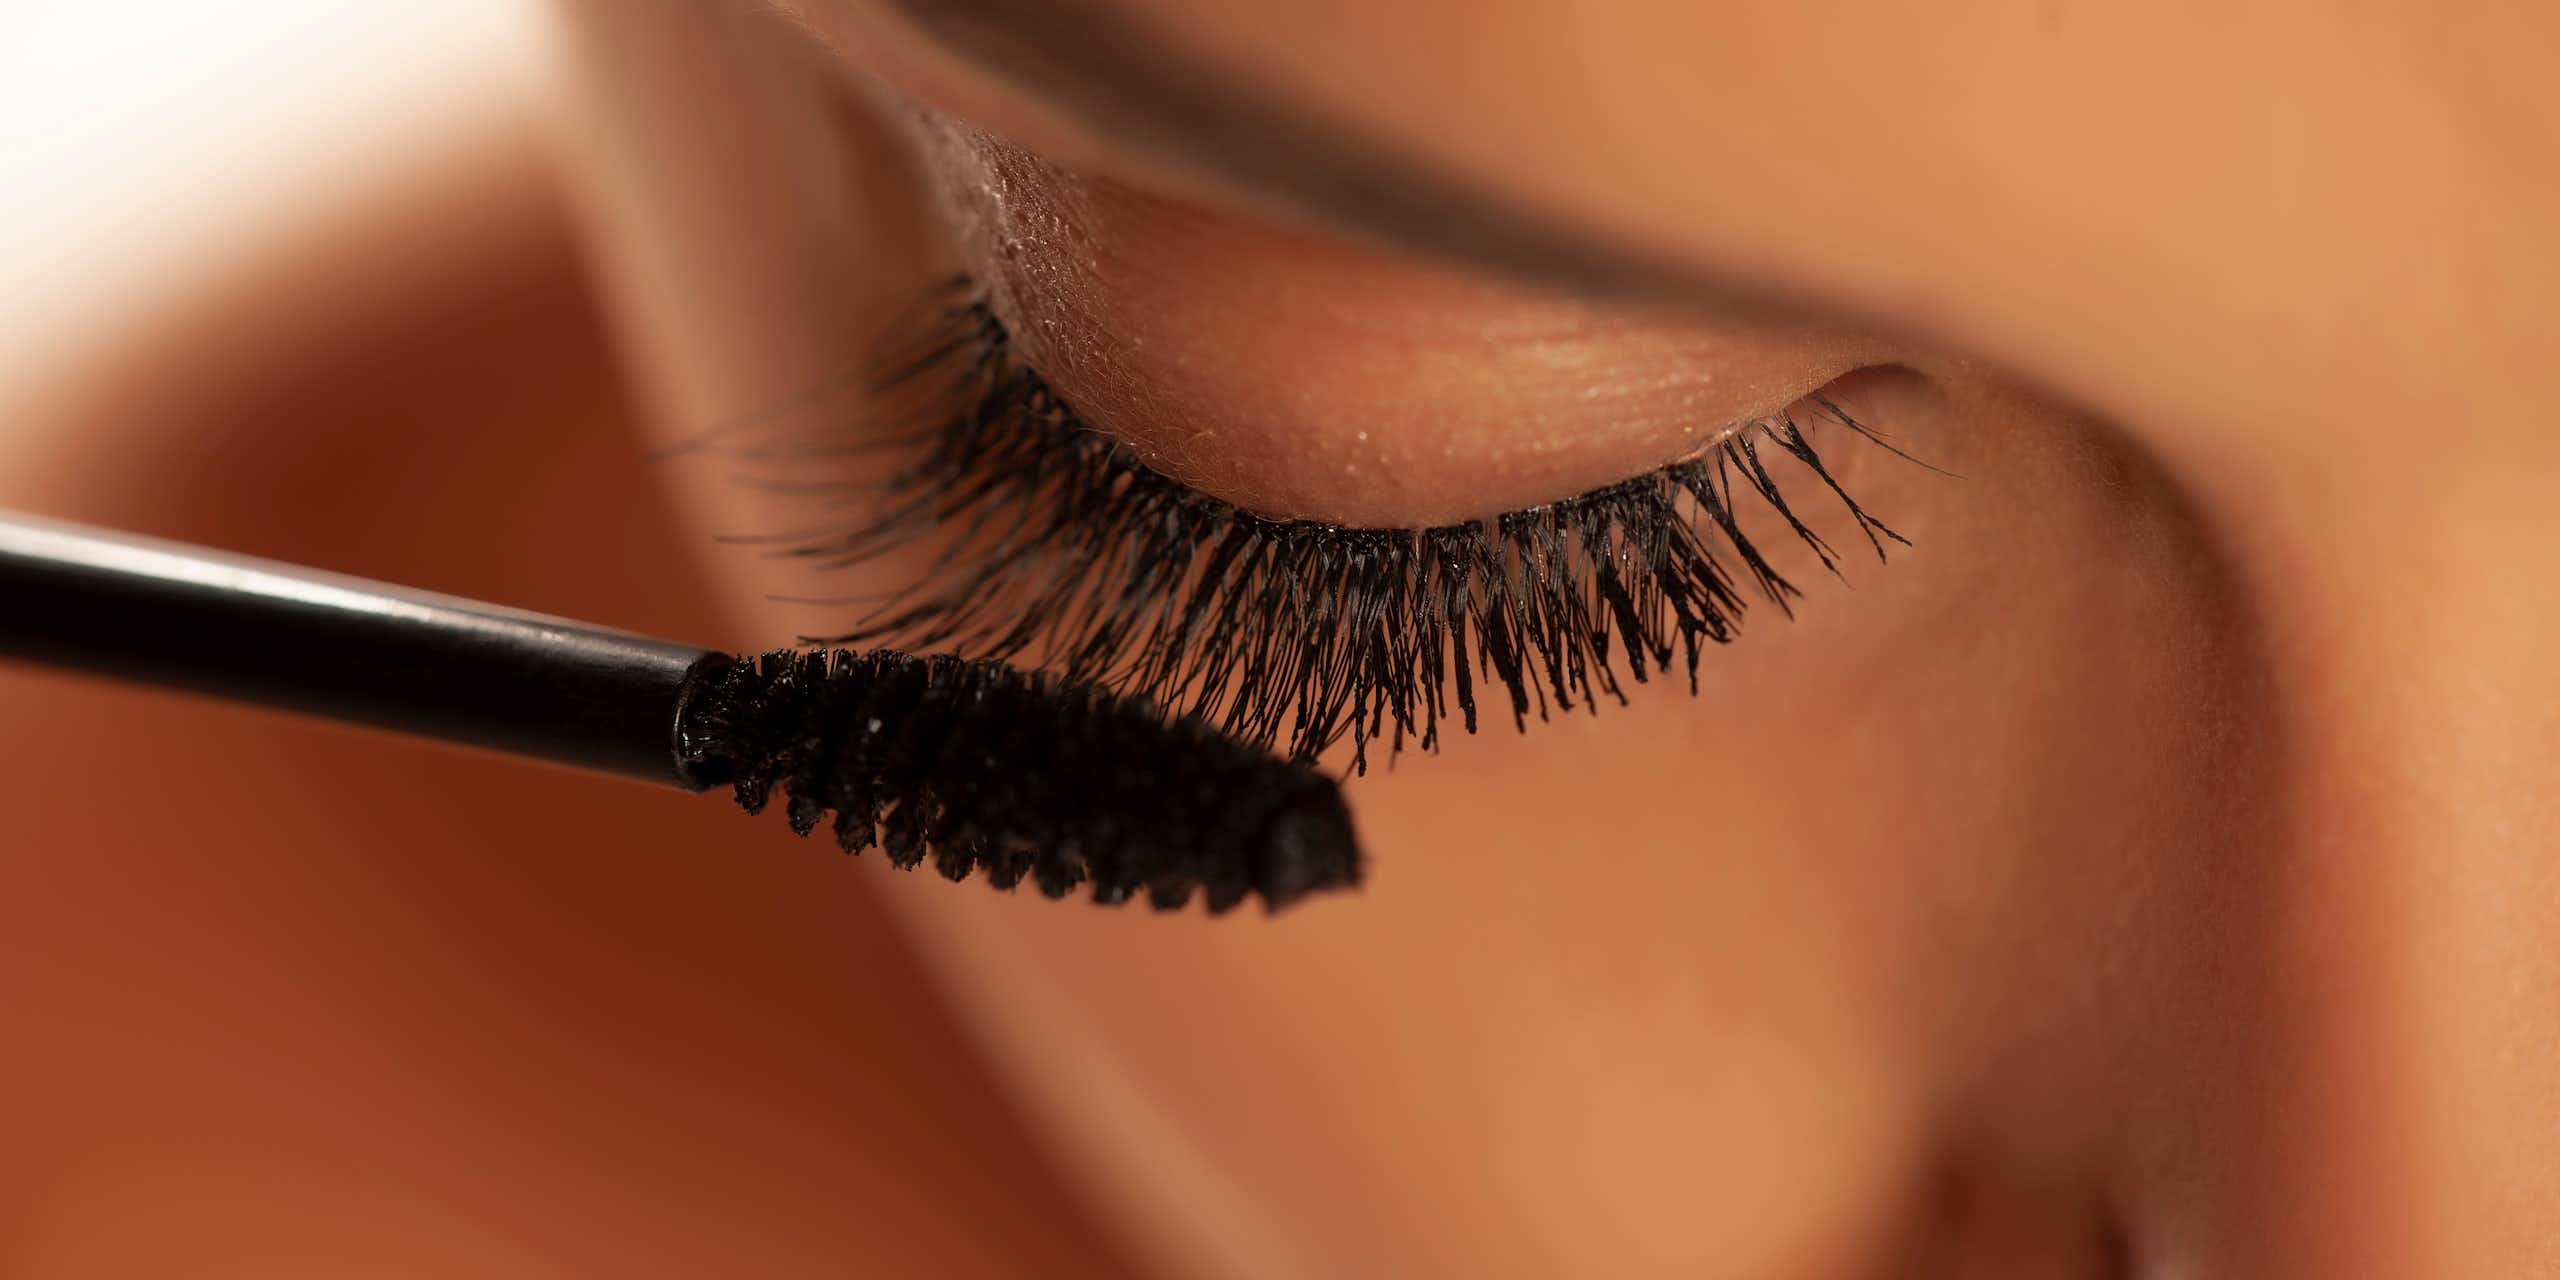 close up of woman applying bacl mascara makeup to eyelashes